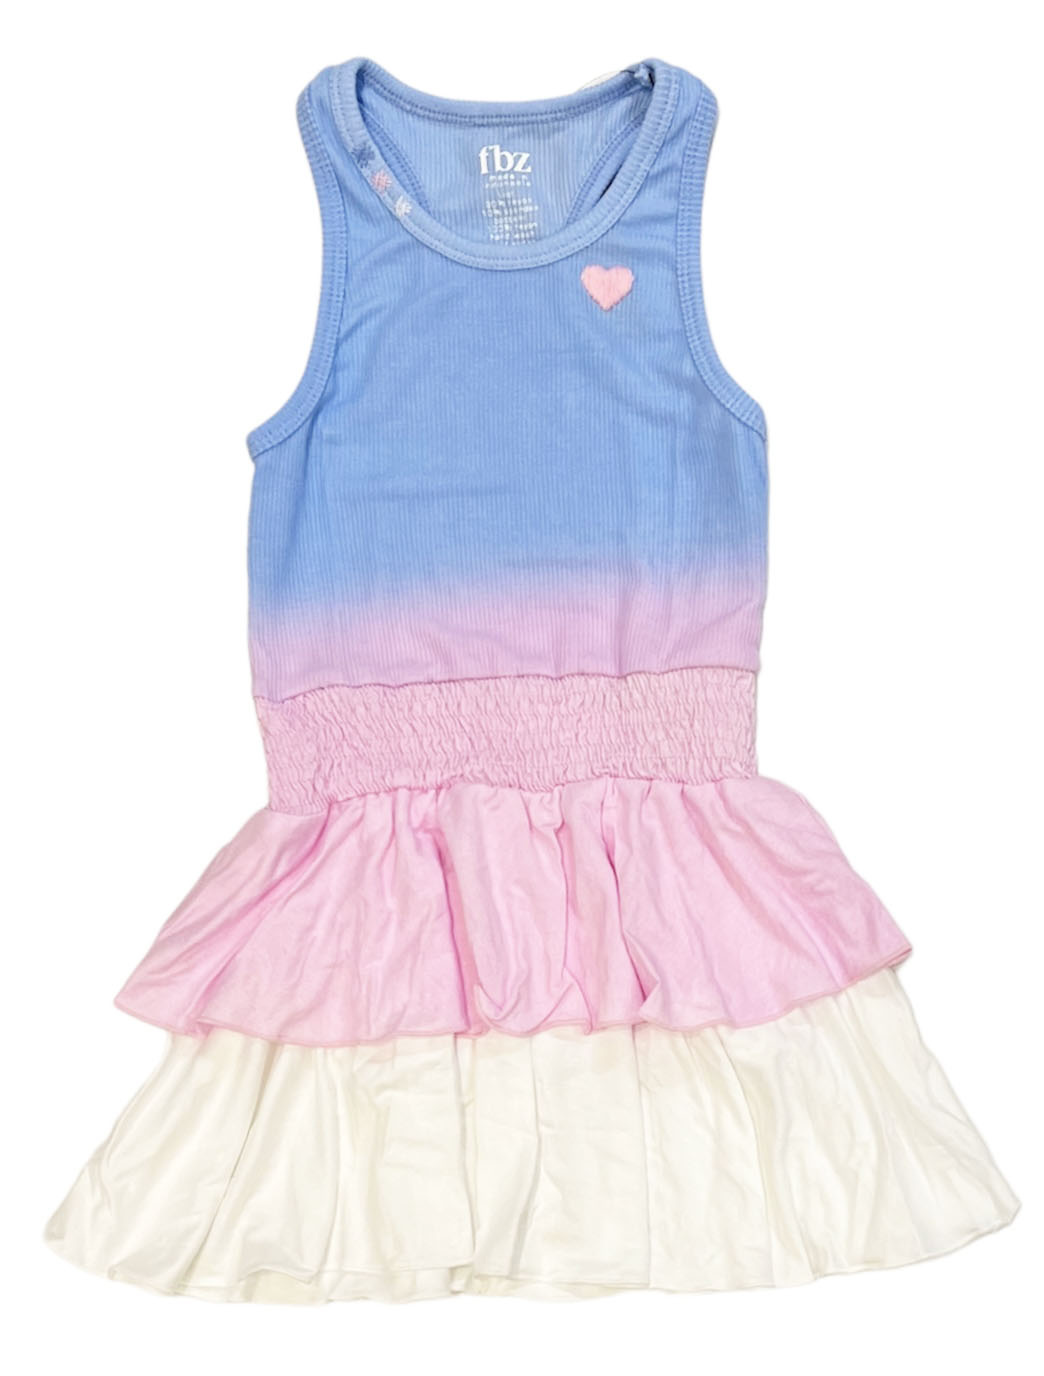 FBZ Blue/Pink Ombre Toddler dress